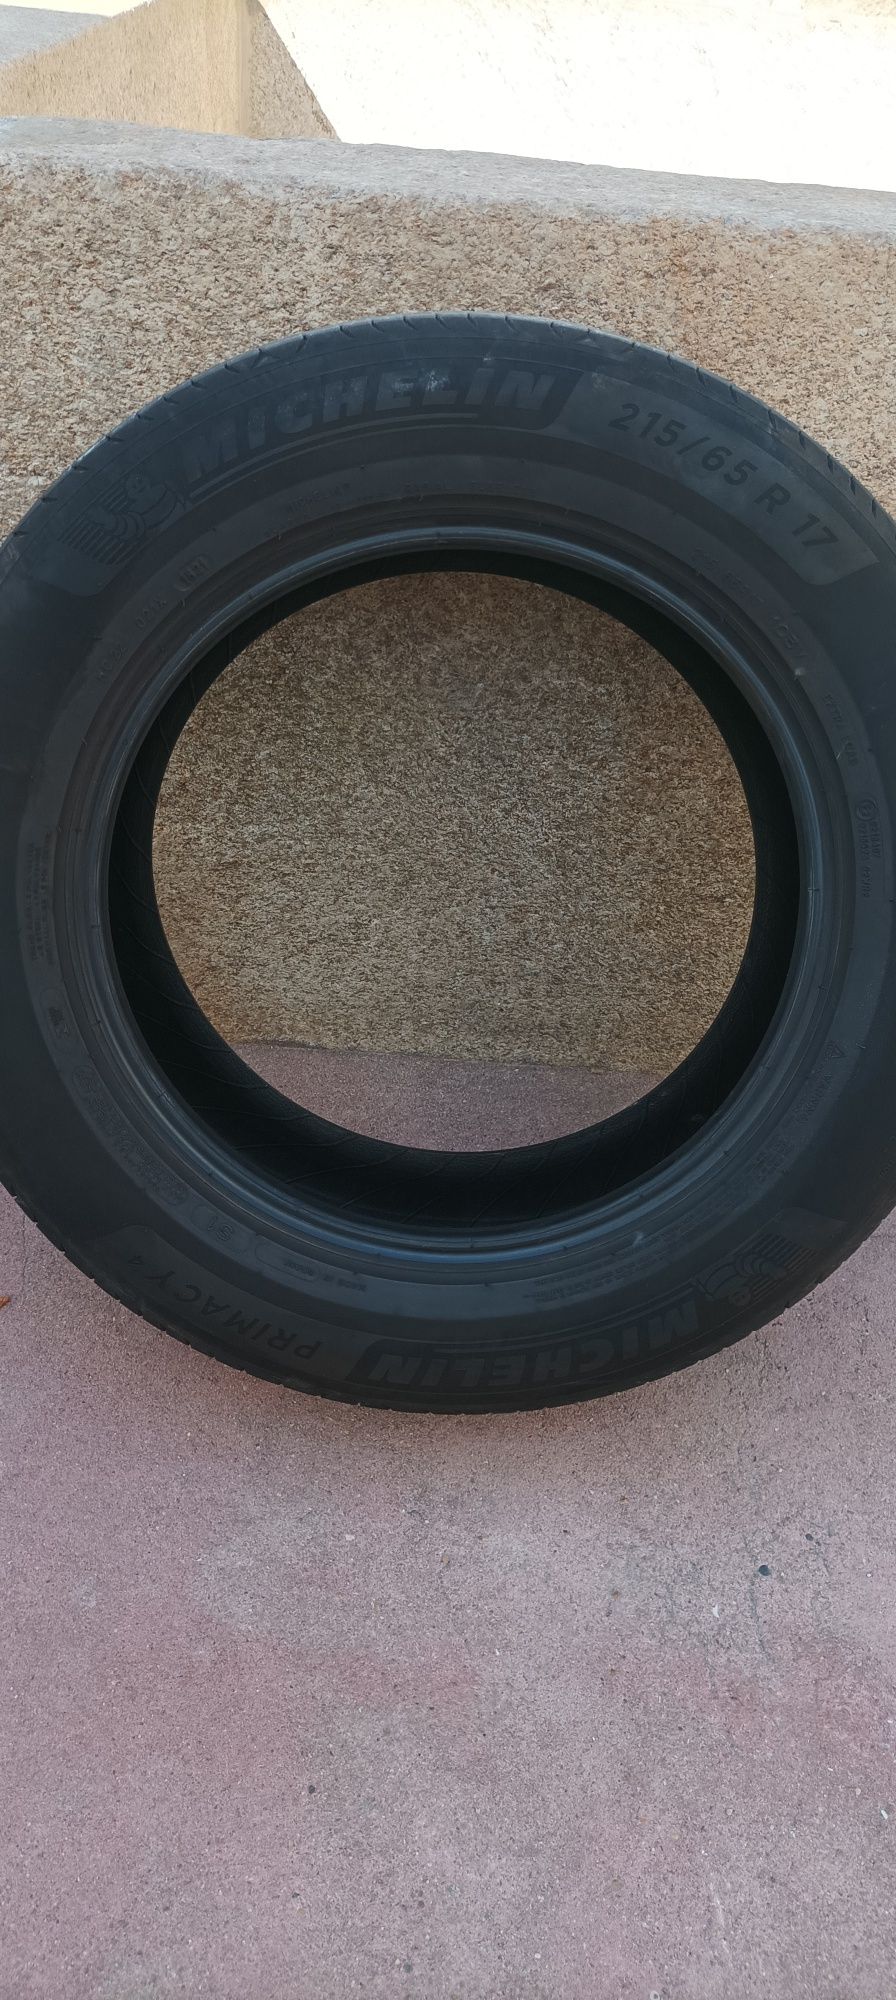 Par pneus Michelin 215/65 R17